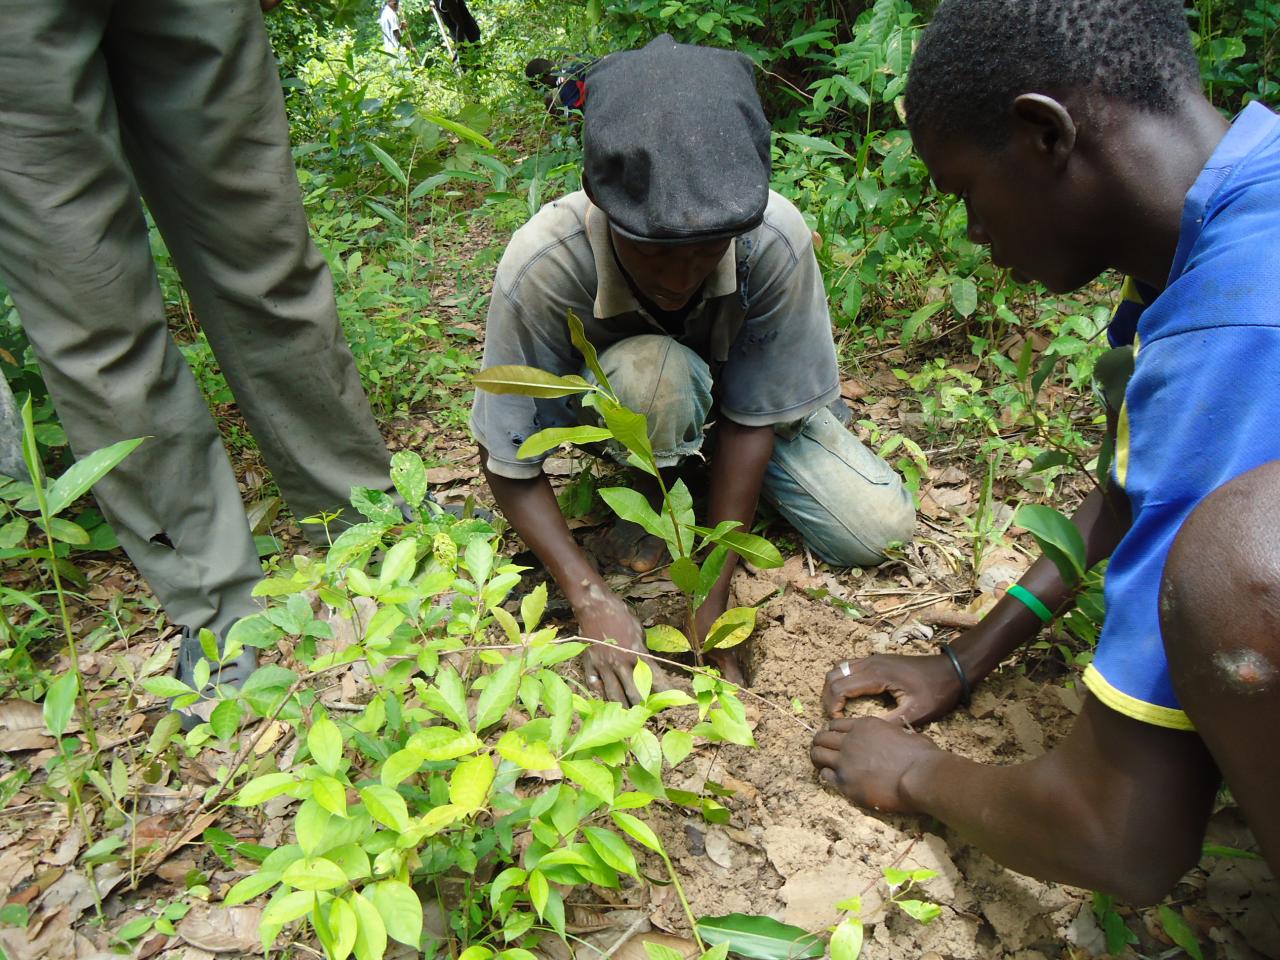 Gestion des ressources forestières : L'ONP/ bois s’engage à coté du ministère de l’environnement à reboiser 10.000 arbres par région.